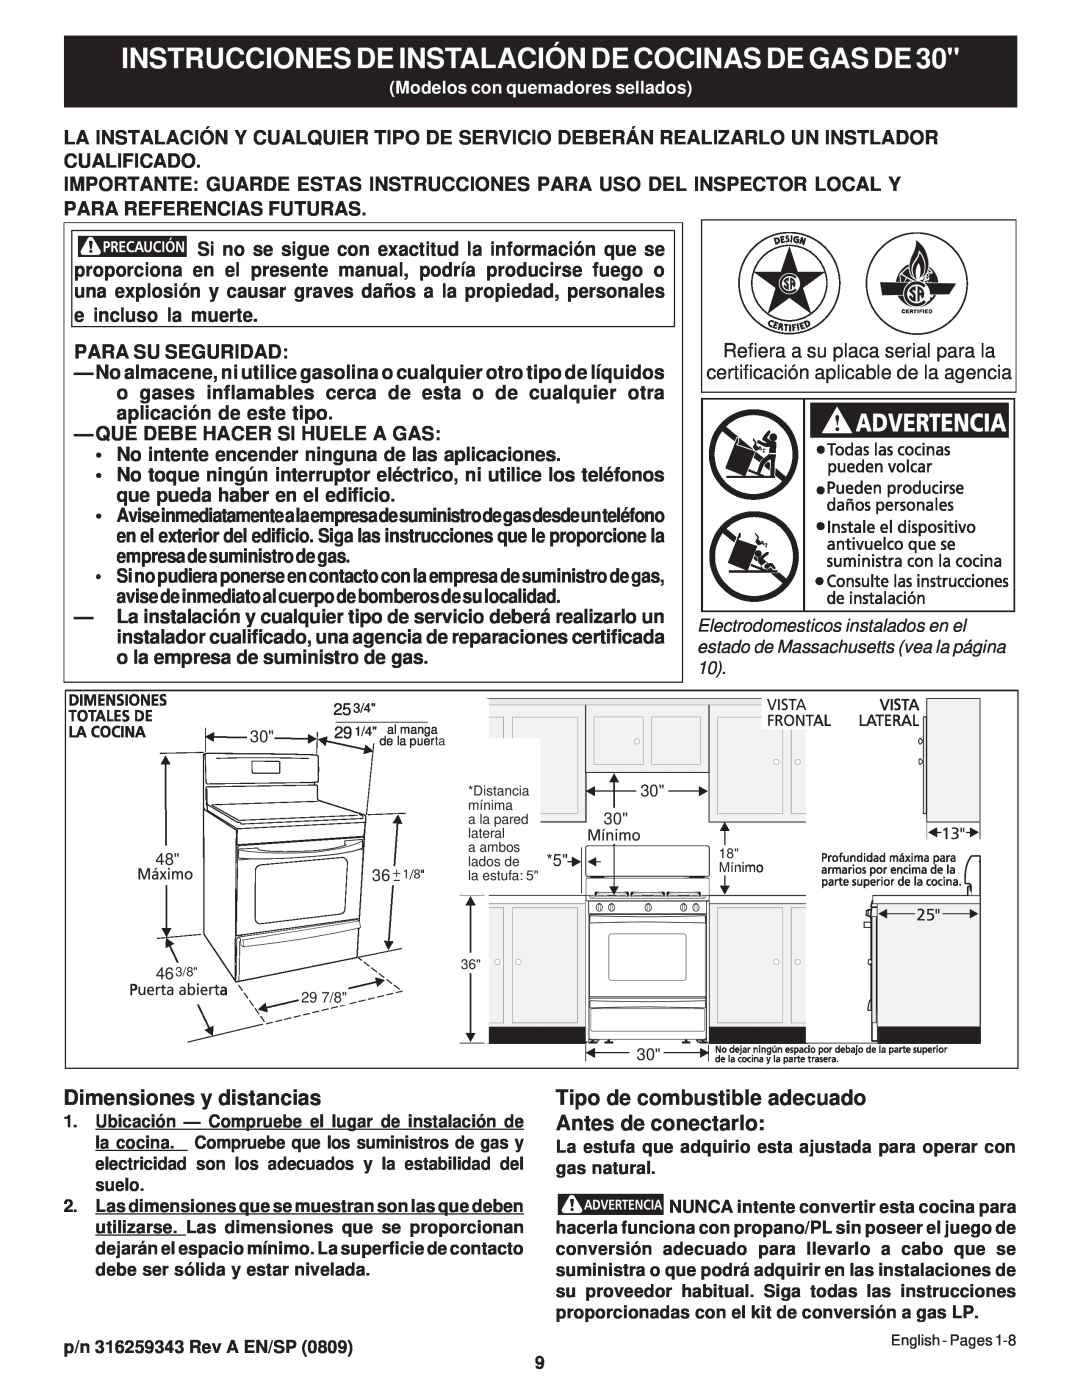 Frigidaire 316259343 Instrucciones De Instalación De Cocinas De Gas De, Dimensiones y distancias, Para Su Seguridad 